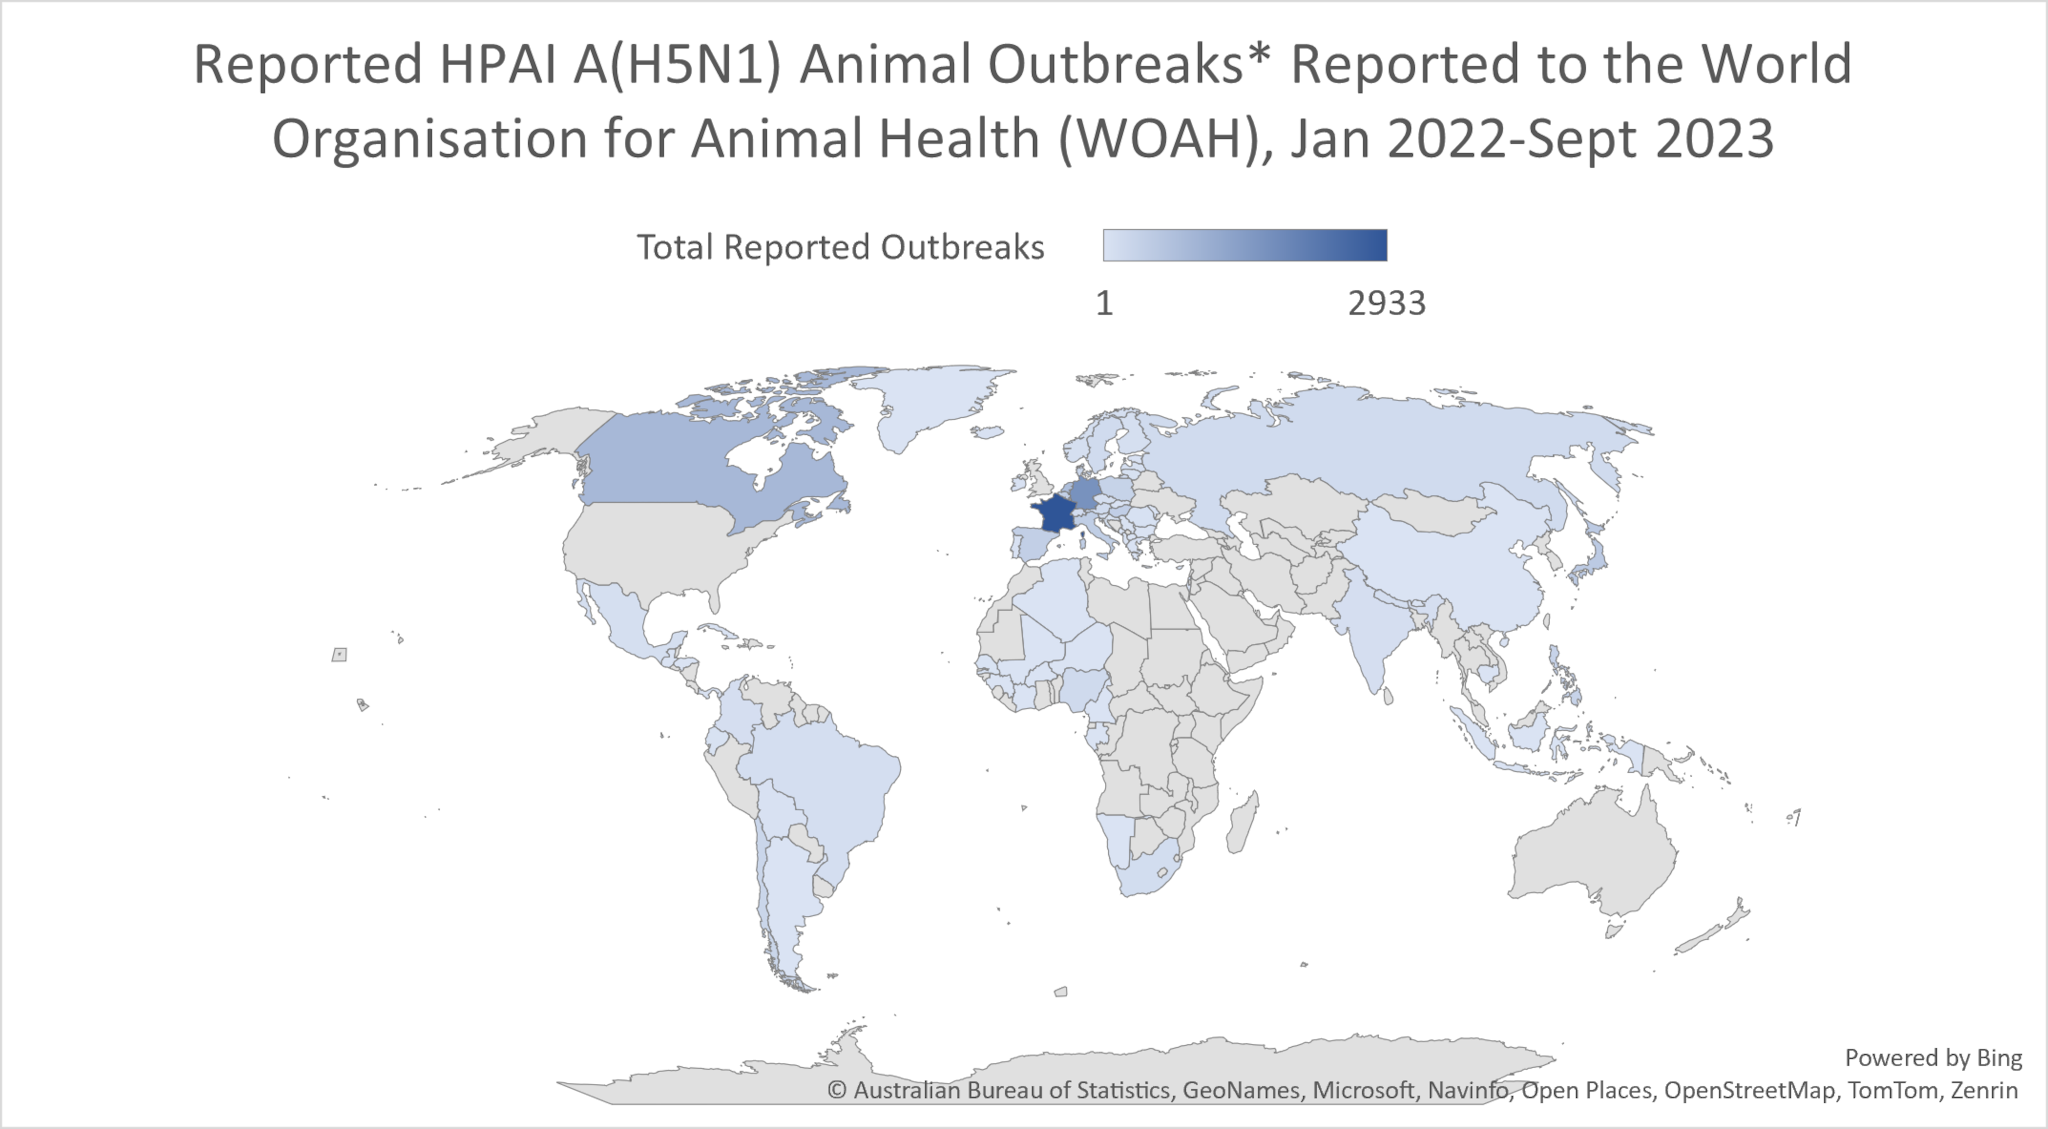 Brotes en animales del virus A(H5N1) de la HPAI notificados a la Organización Mundial de Sanidad Animal (WHOAH) entre enero del 2022 y septiembre del 2023